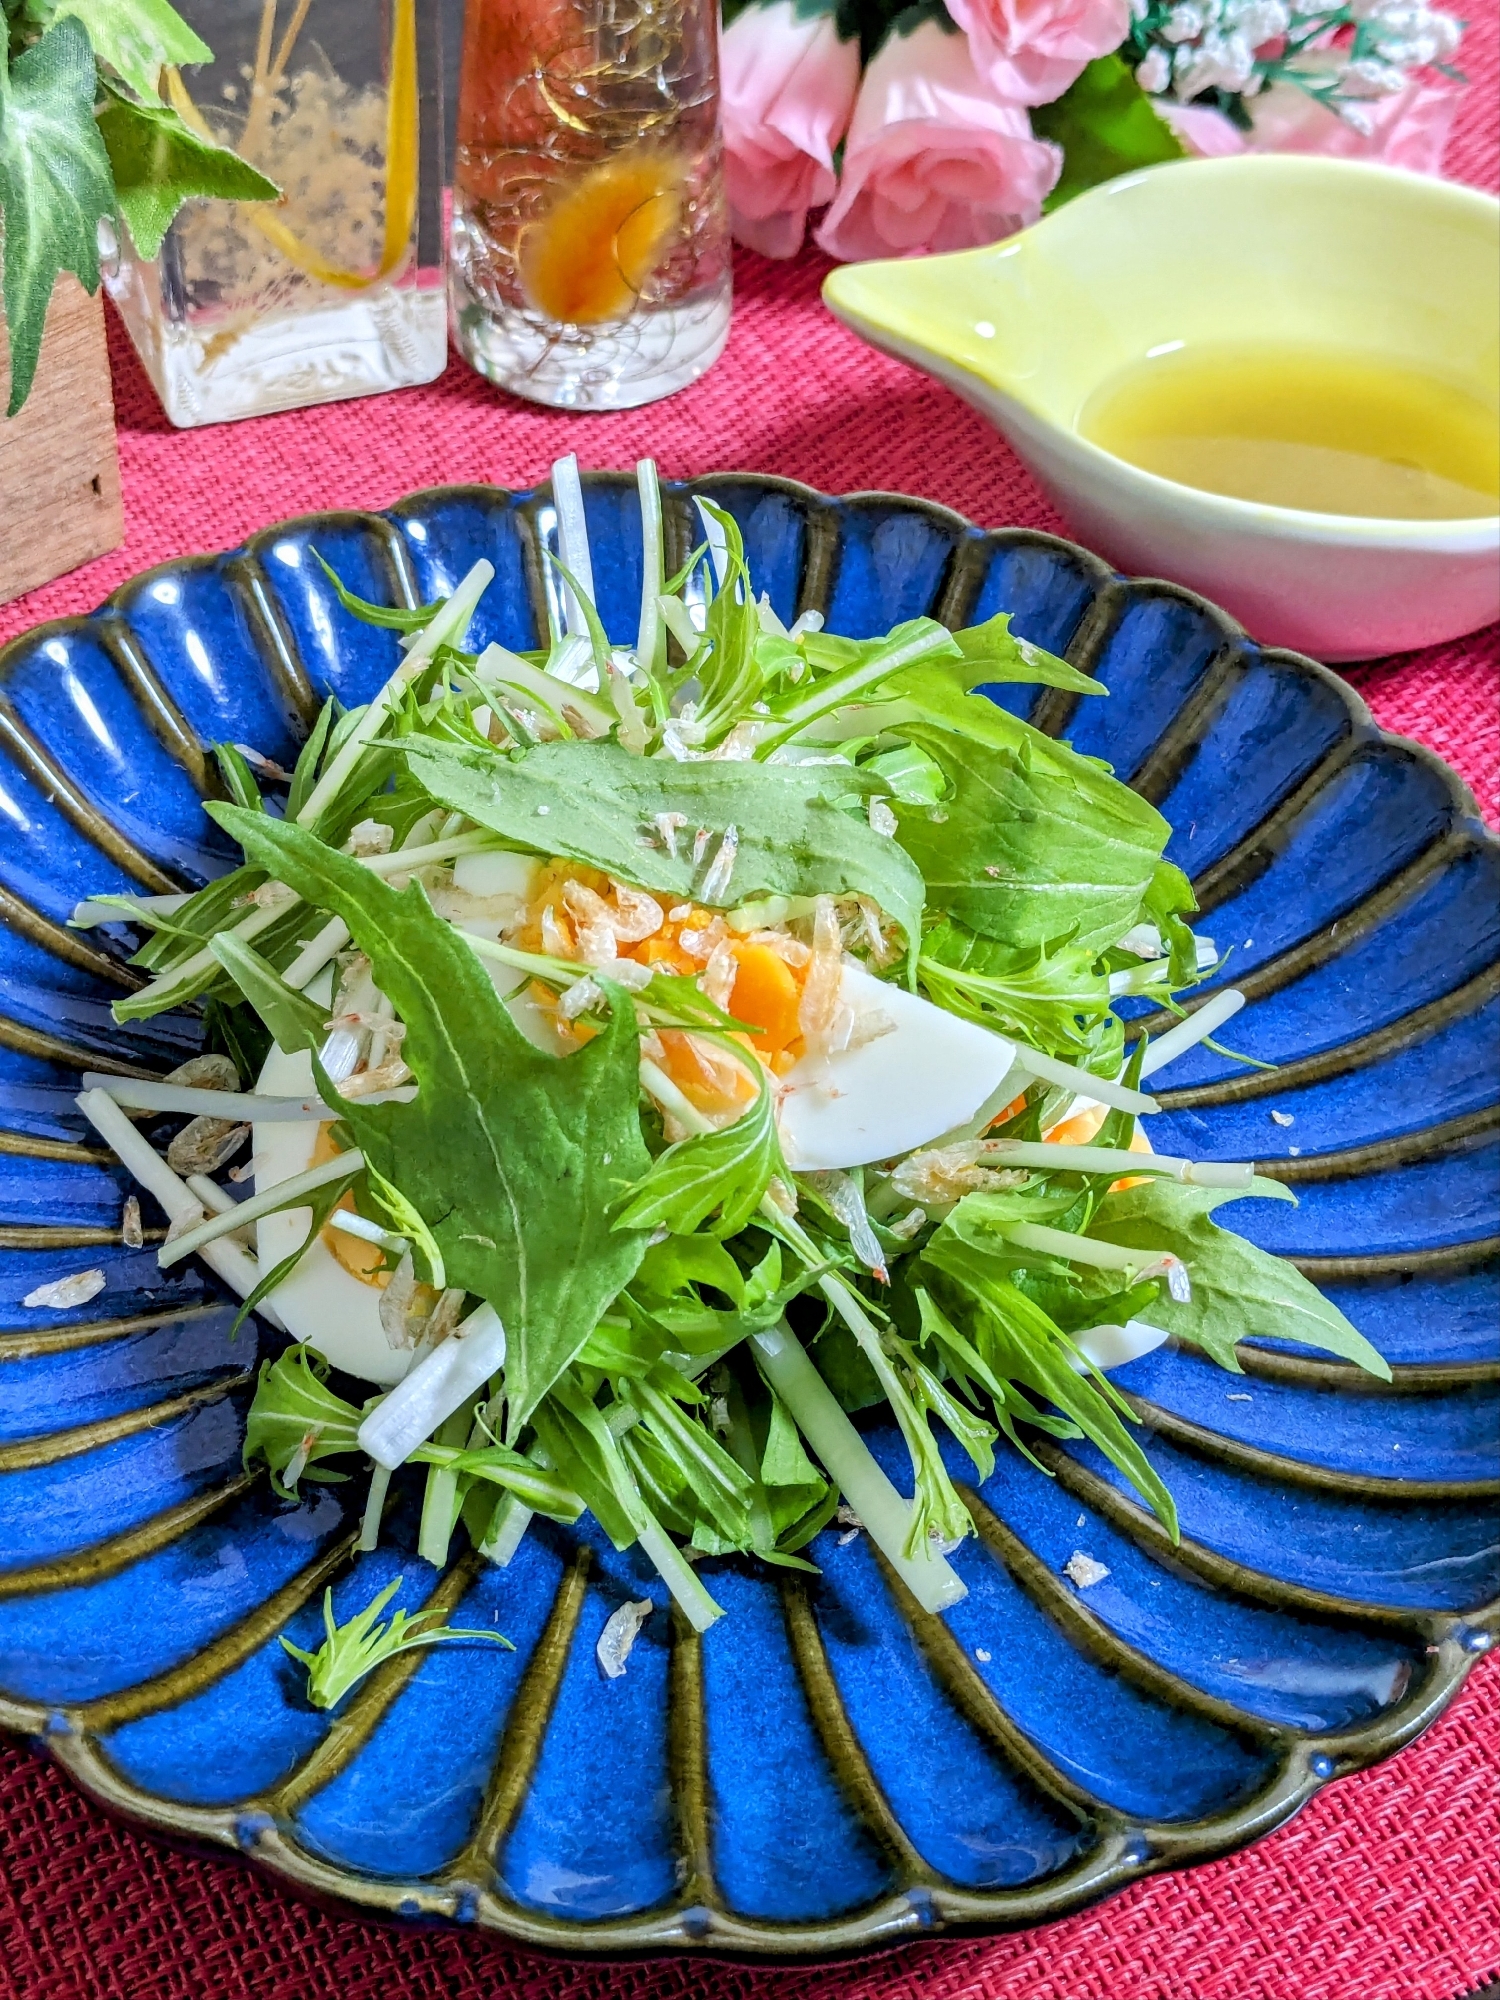 水菜と乾燥えびのサラダ〜柚子胡椒ドレッシングで〜